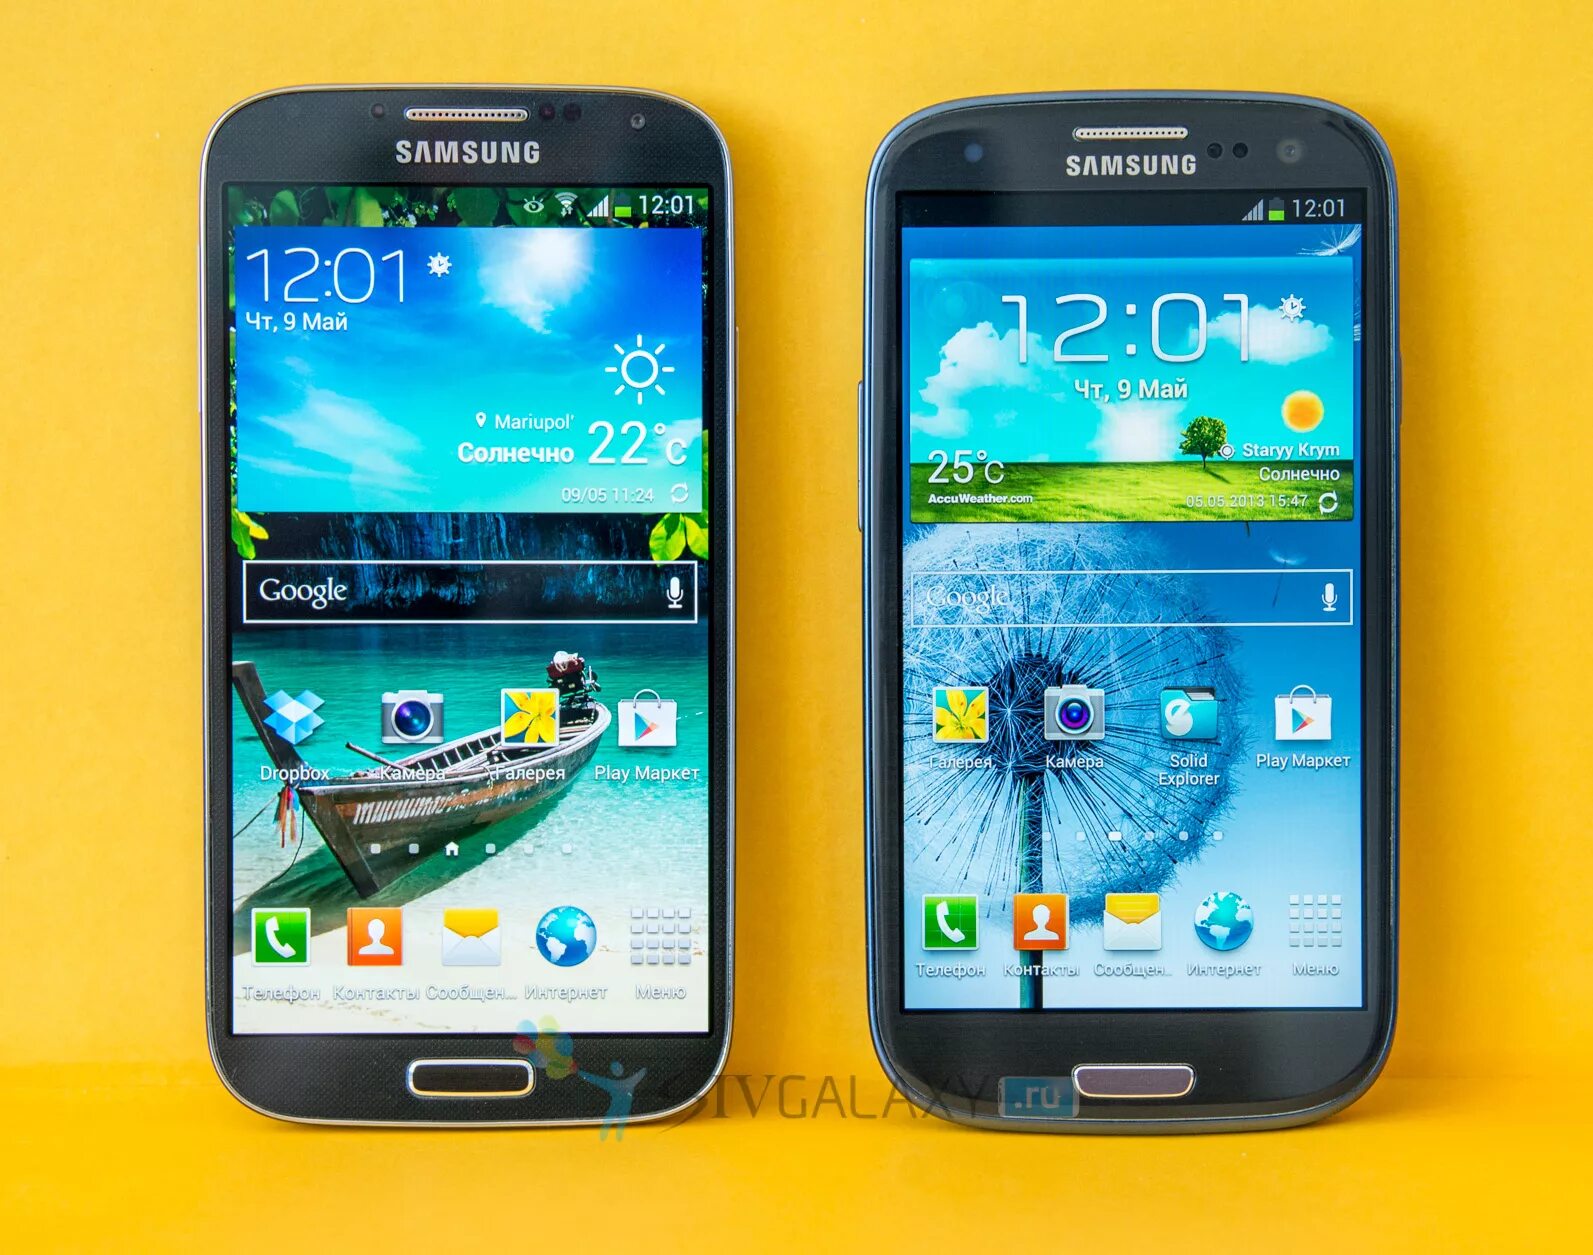 Galaxy телефоны сравнение. Самсунг галакси с4. Самсунг галакси с4 i9500. Samsung s3 s4. Galaxy i9500 s3.